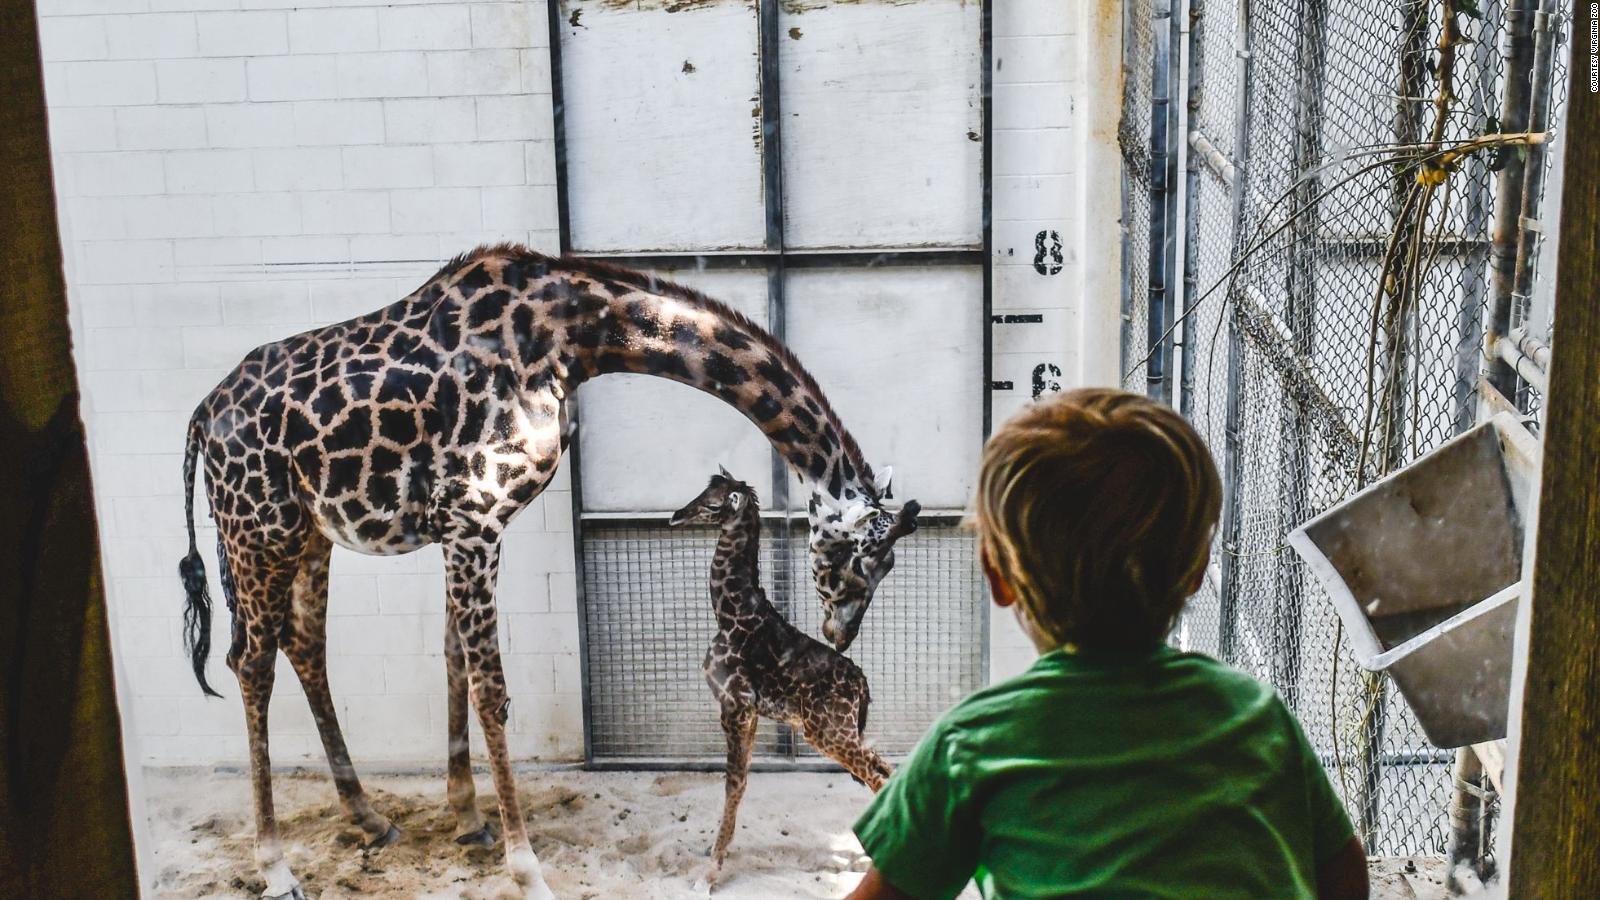 Jirafa dio a luz inesperadamente delante de los visitantes de un zoológico